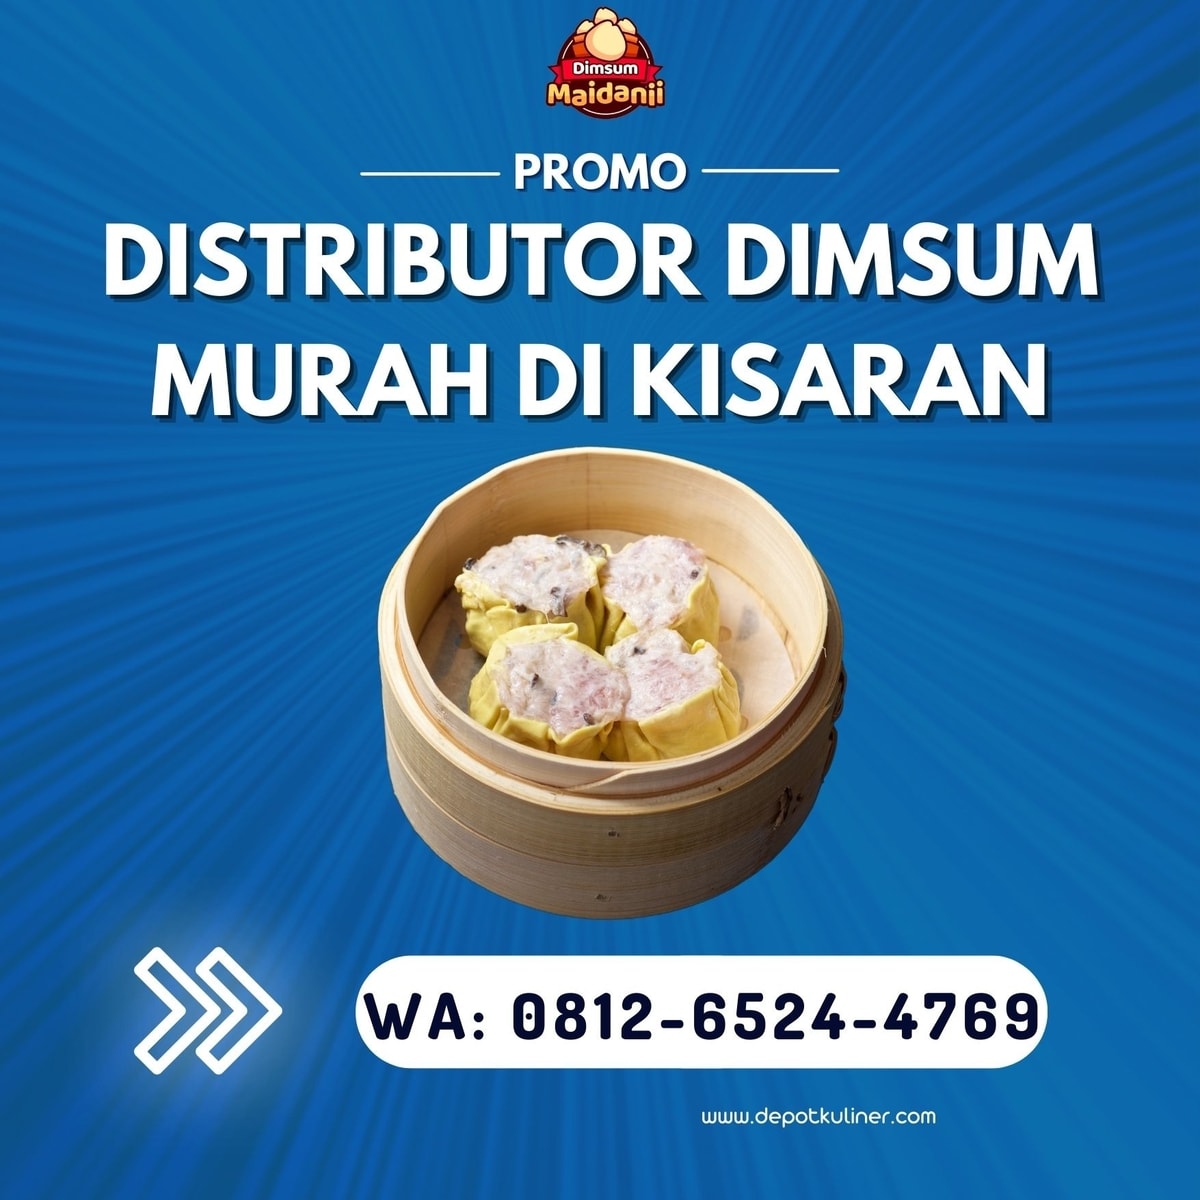 HARGA DISTRIBUTOR, Call 0812-6524-4769,  Distributor Dimsum Murah Di Kisaran